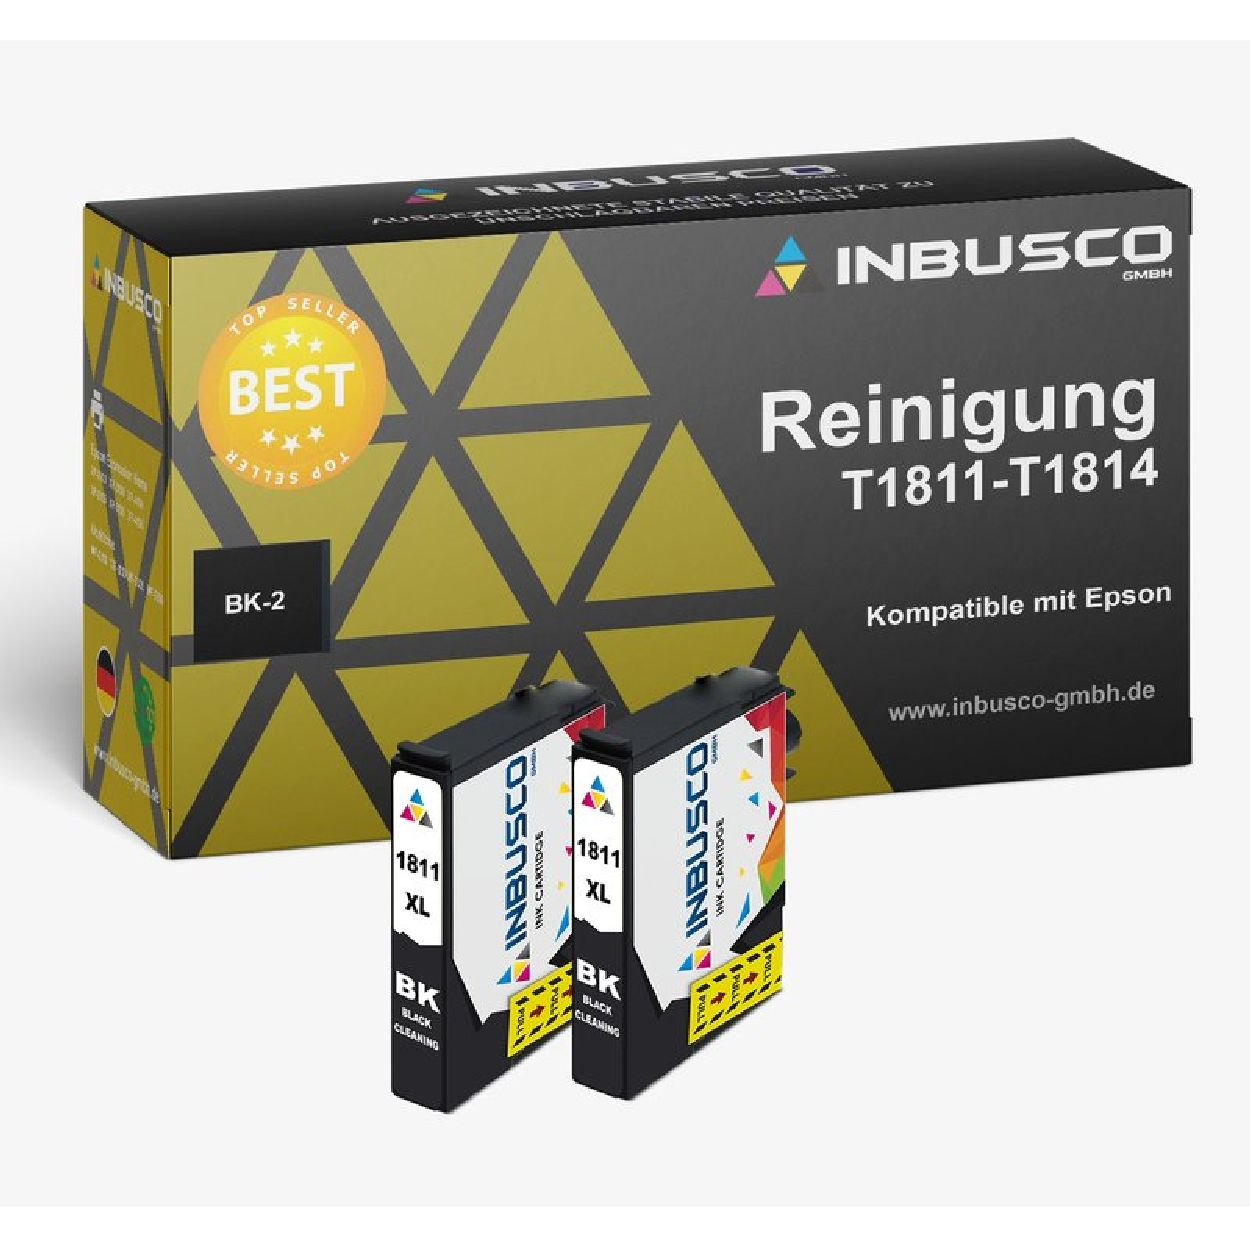 INBUSCO / KUBIS Mehrfarbig Tintenpatrone (2xT1811BK) SET ReinigungT1811 BK